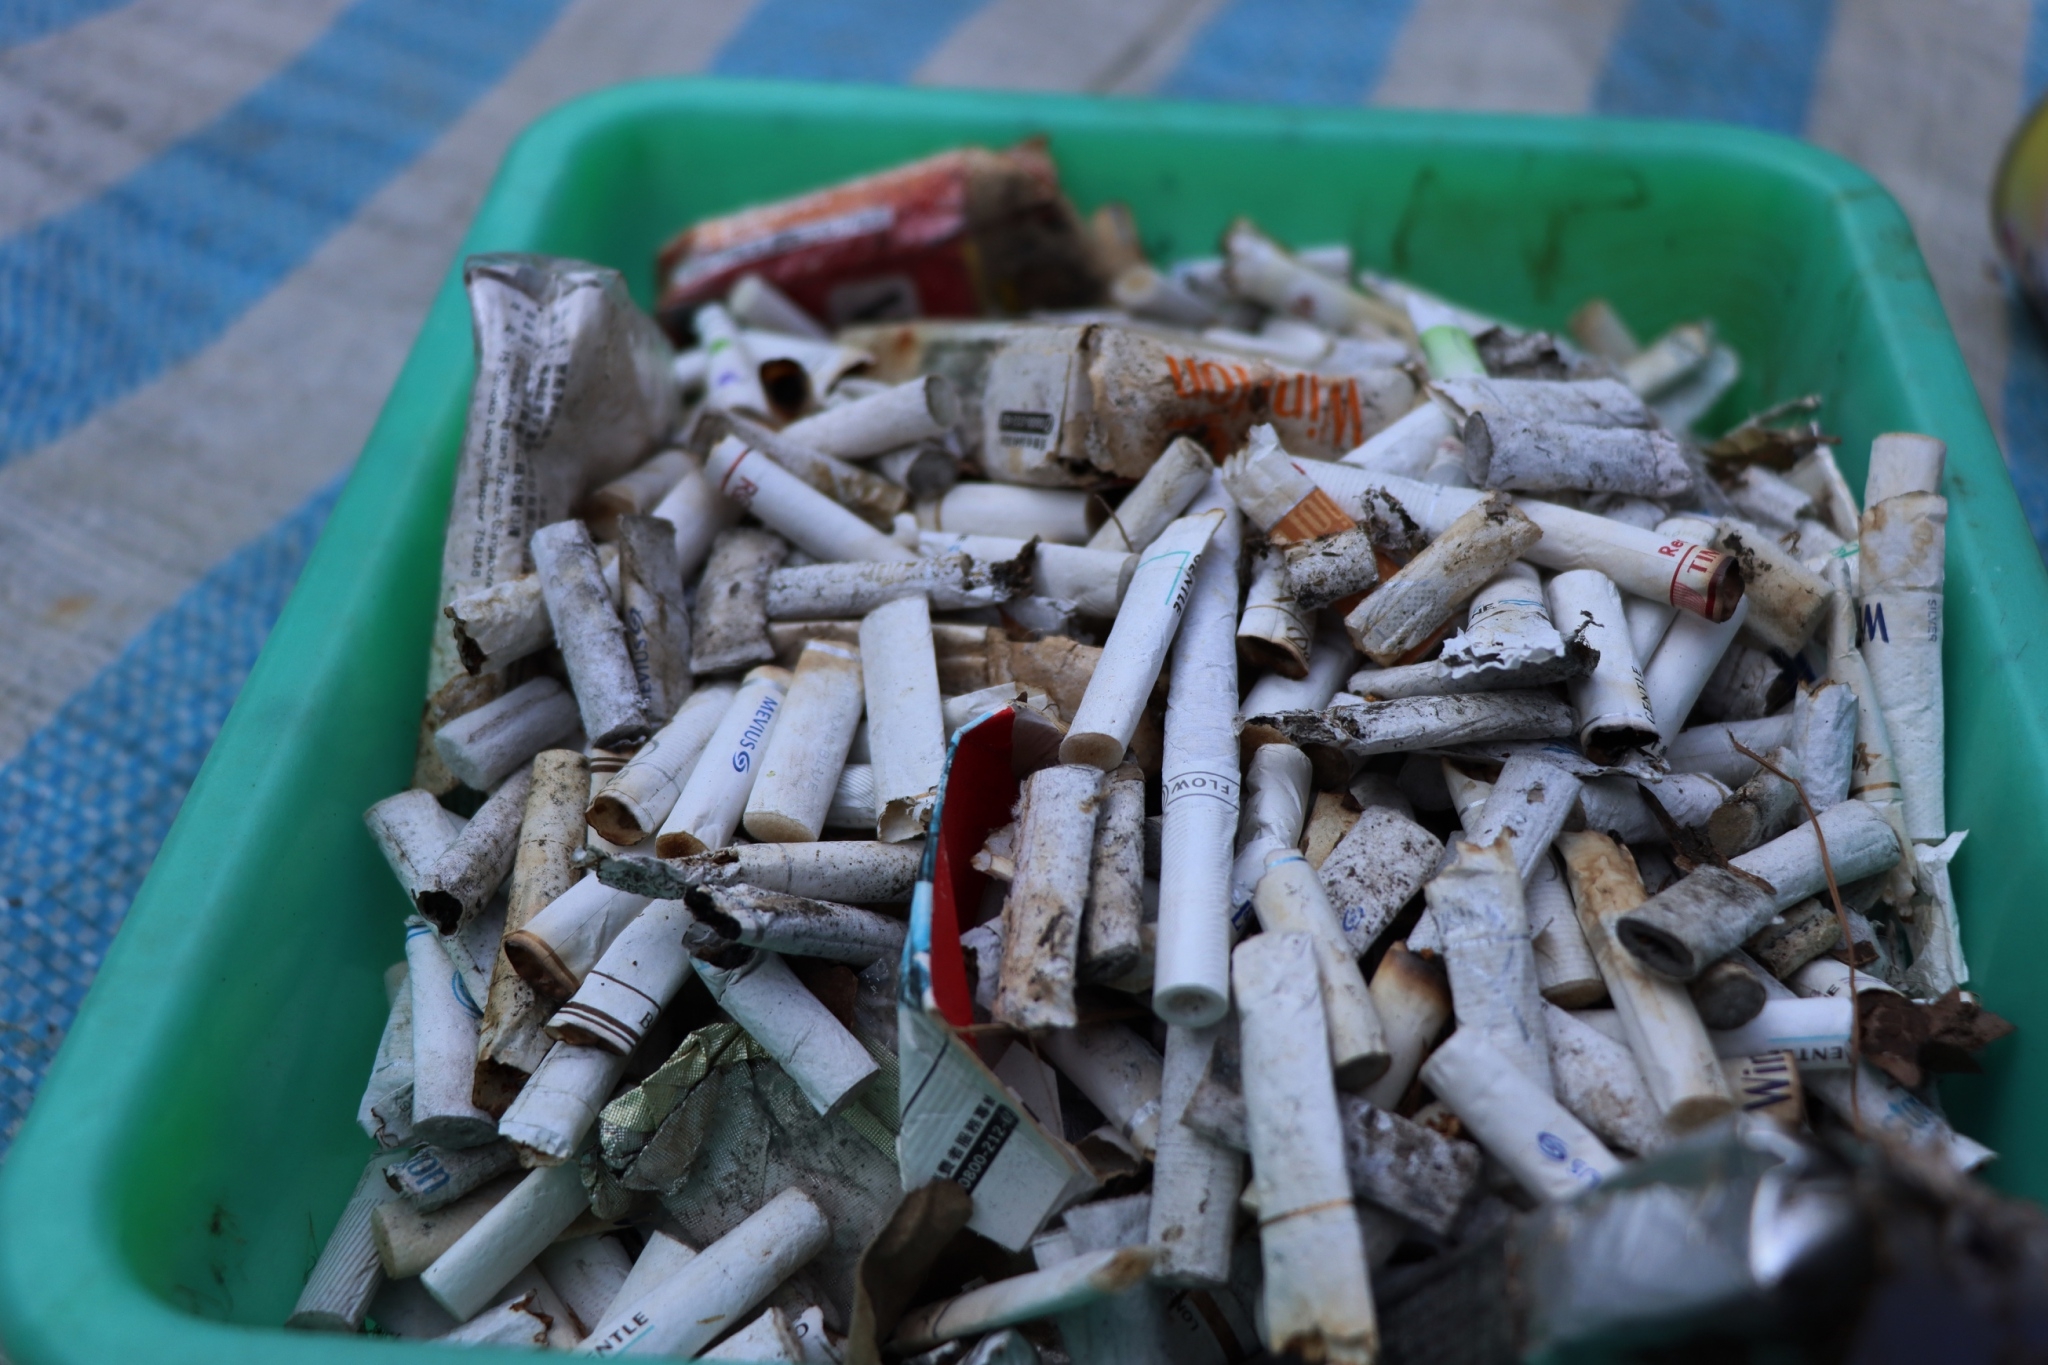 在此次淨山行動中，第二大宗的廢棄物為菸蒂。看似只由菸草和紙構成的香菸，濾嘴部分其實是以塑膠纖維製成，不僅難以分解，菸蒂中殘留的尼古丁、砷、鉛等有害物質更會逸散到大自然中，危害環境。